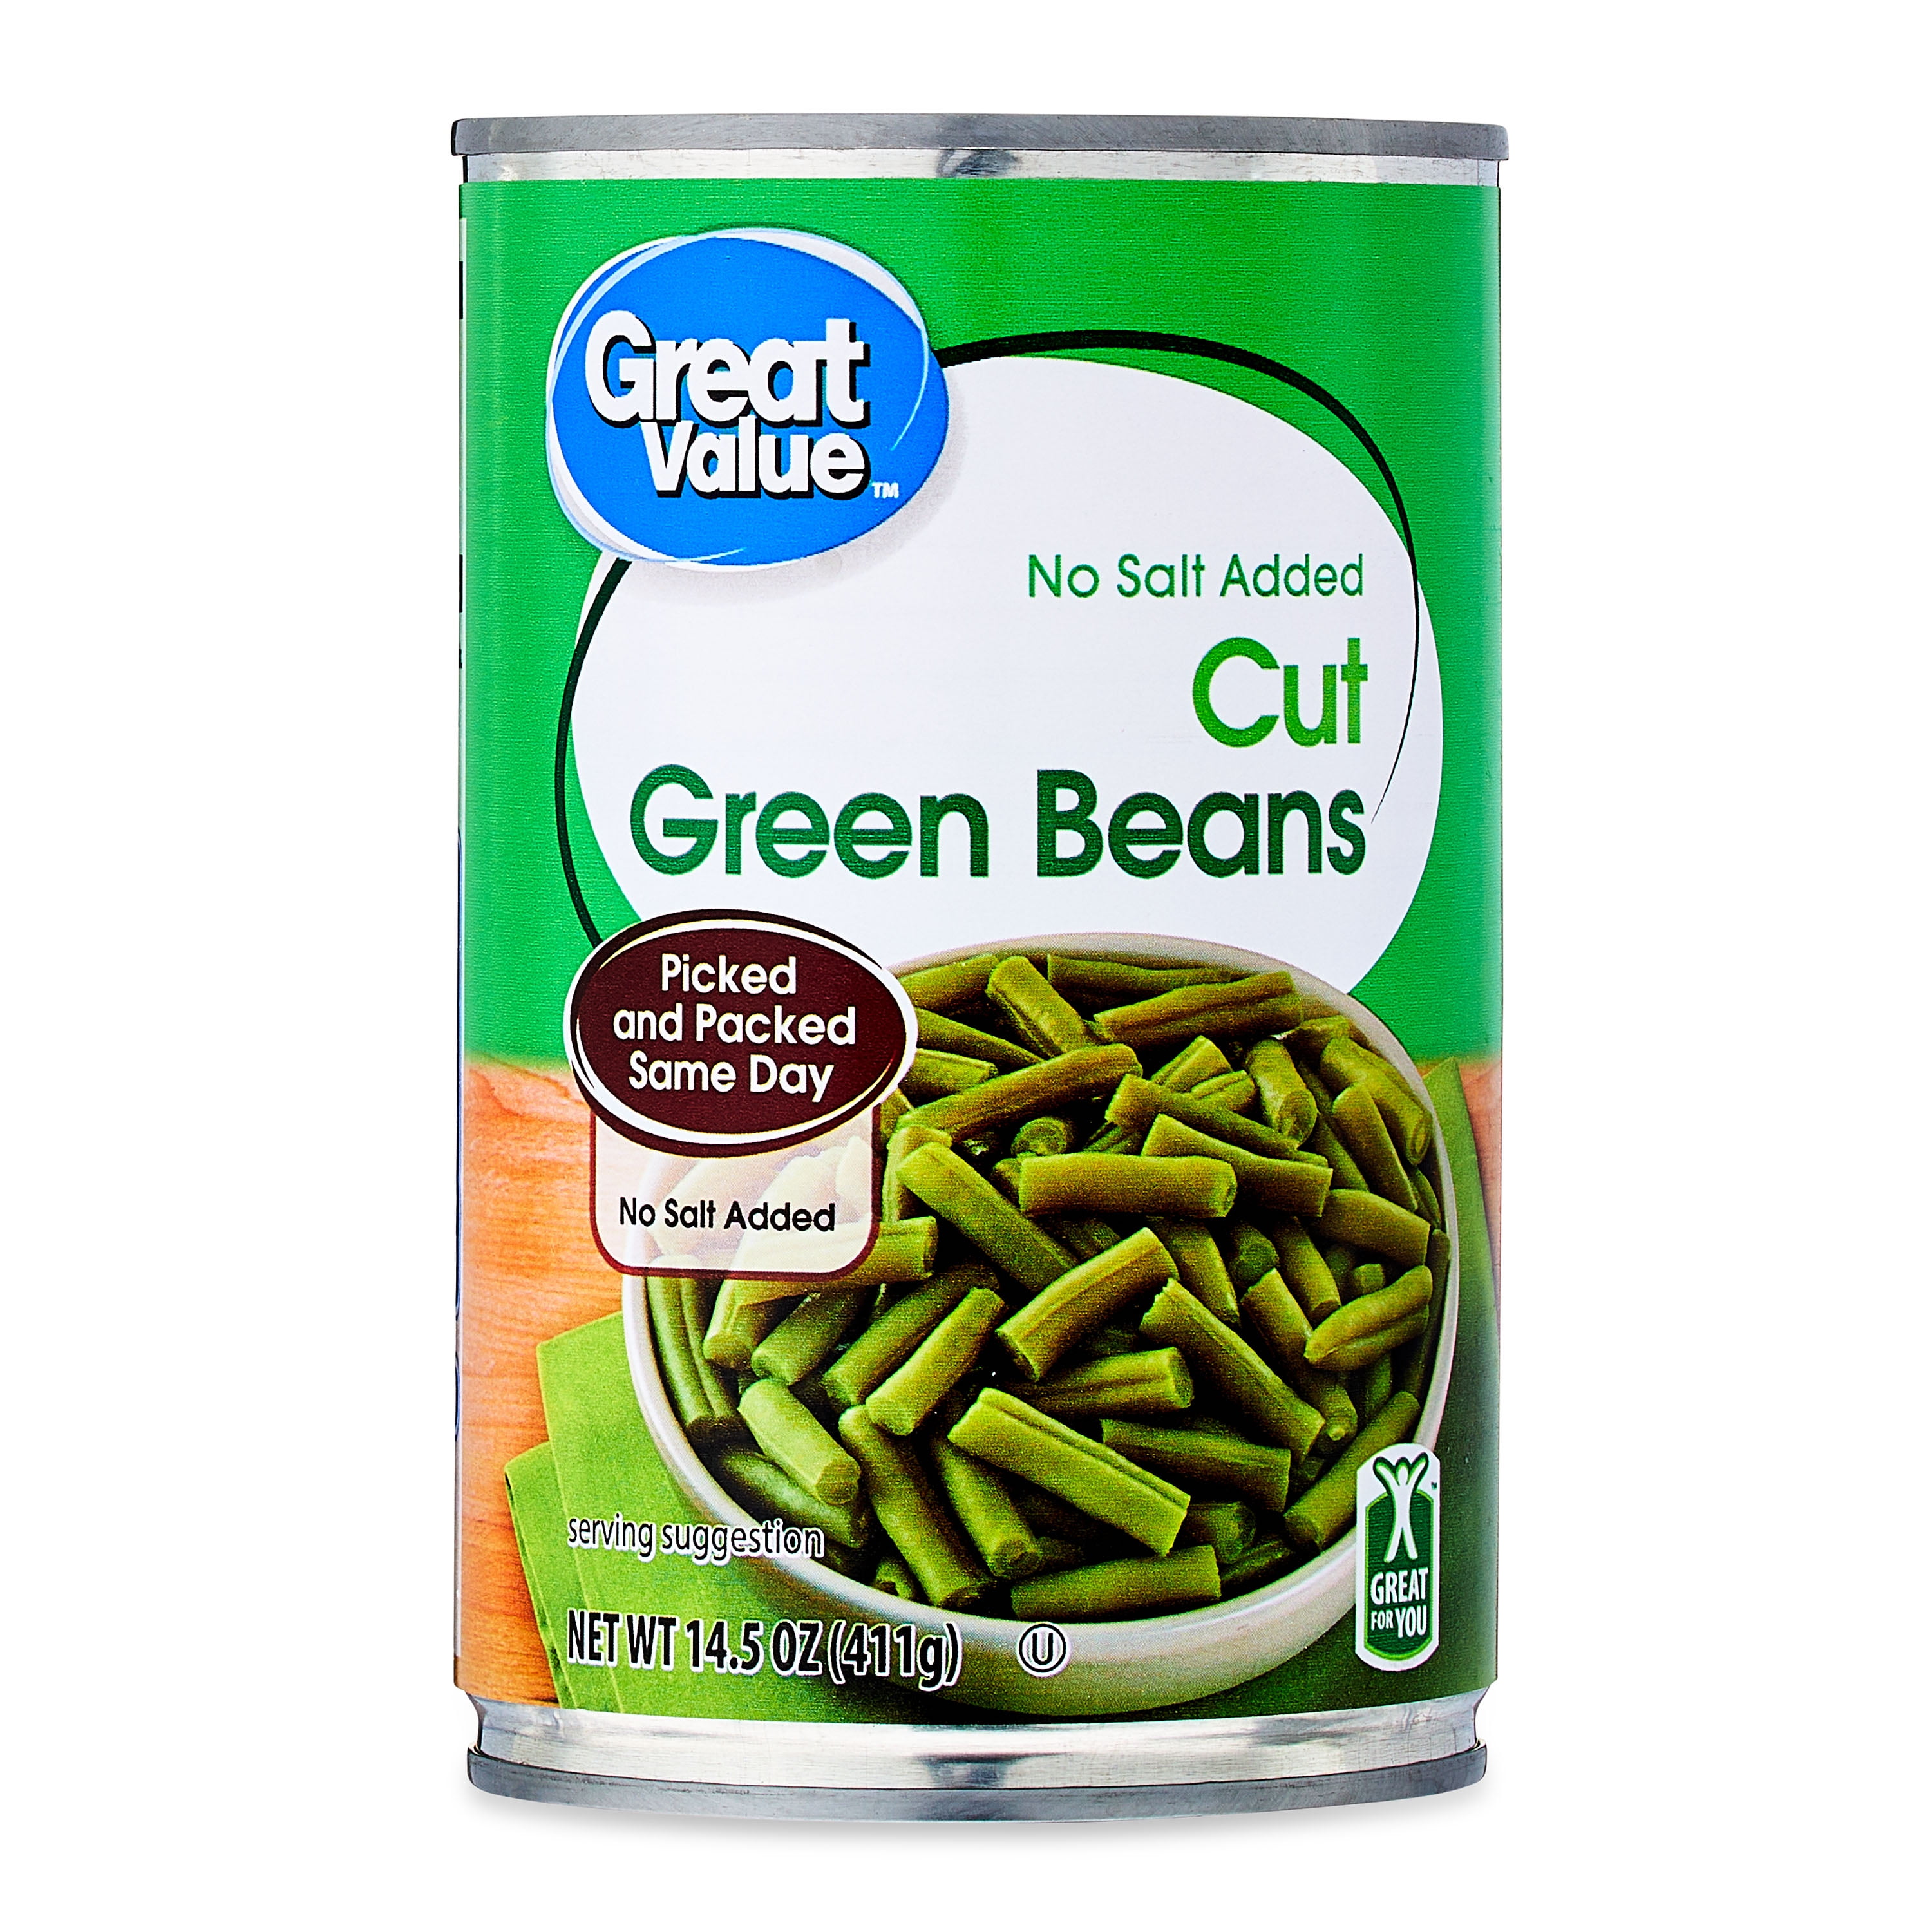 Great Value No Salt Added Cut Green Beans, 14.5 oz